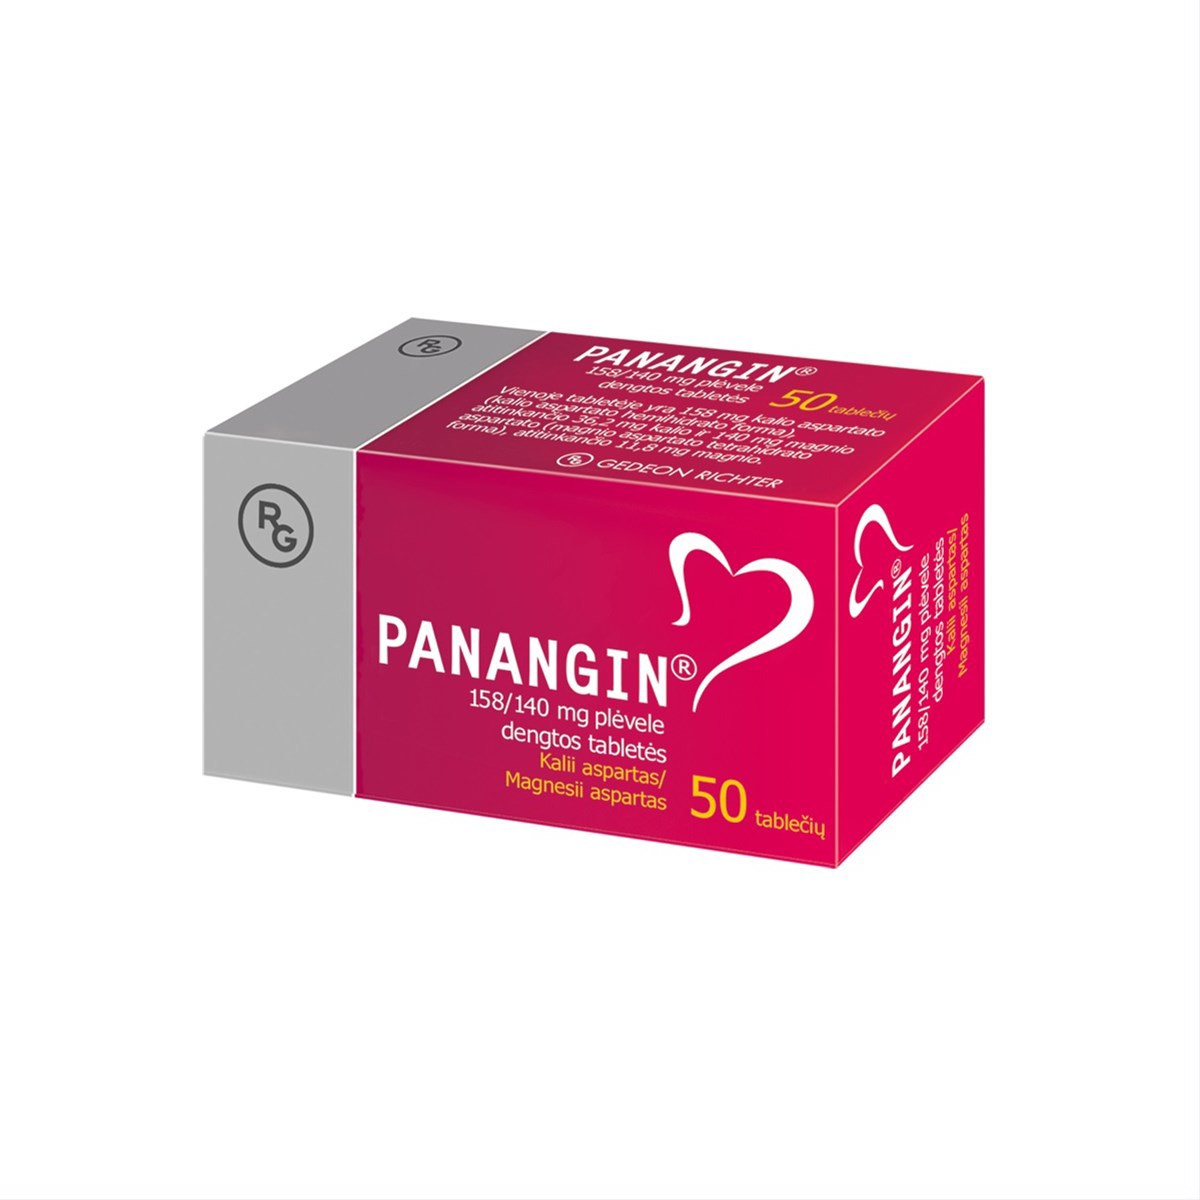 PANANGIN, 158/140 mg, plėvele dengtos tabletės, N50